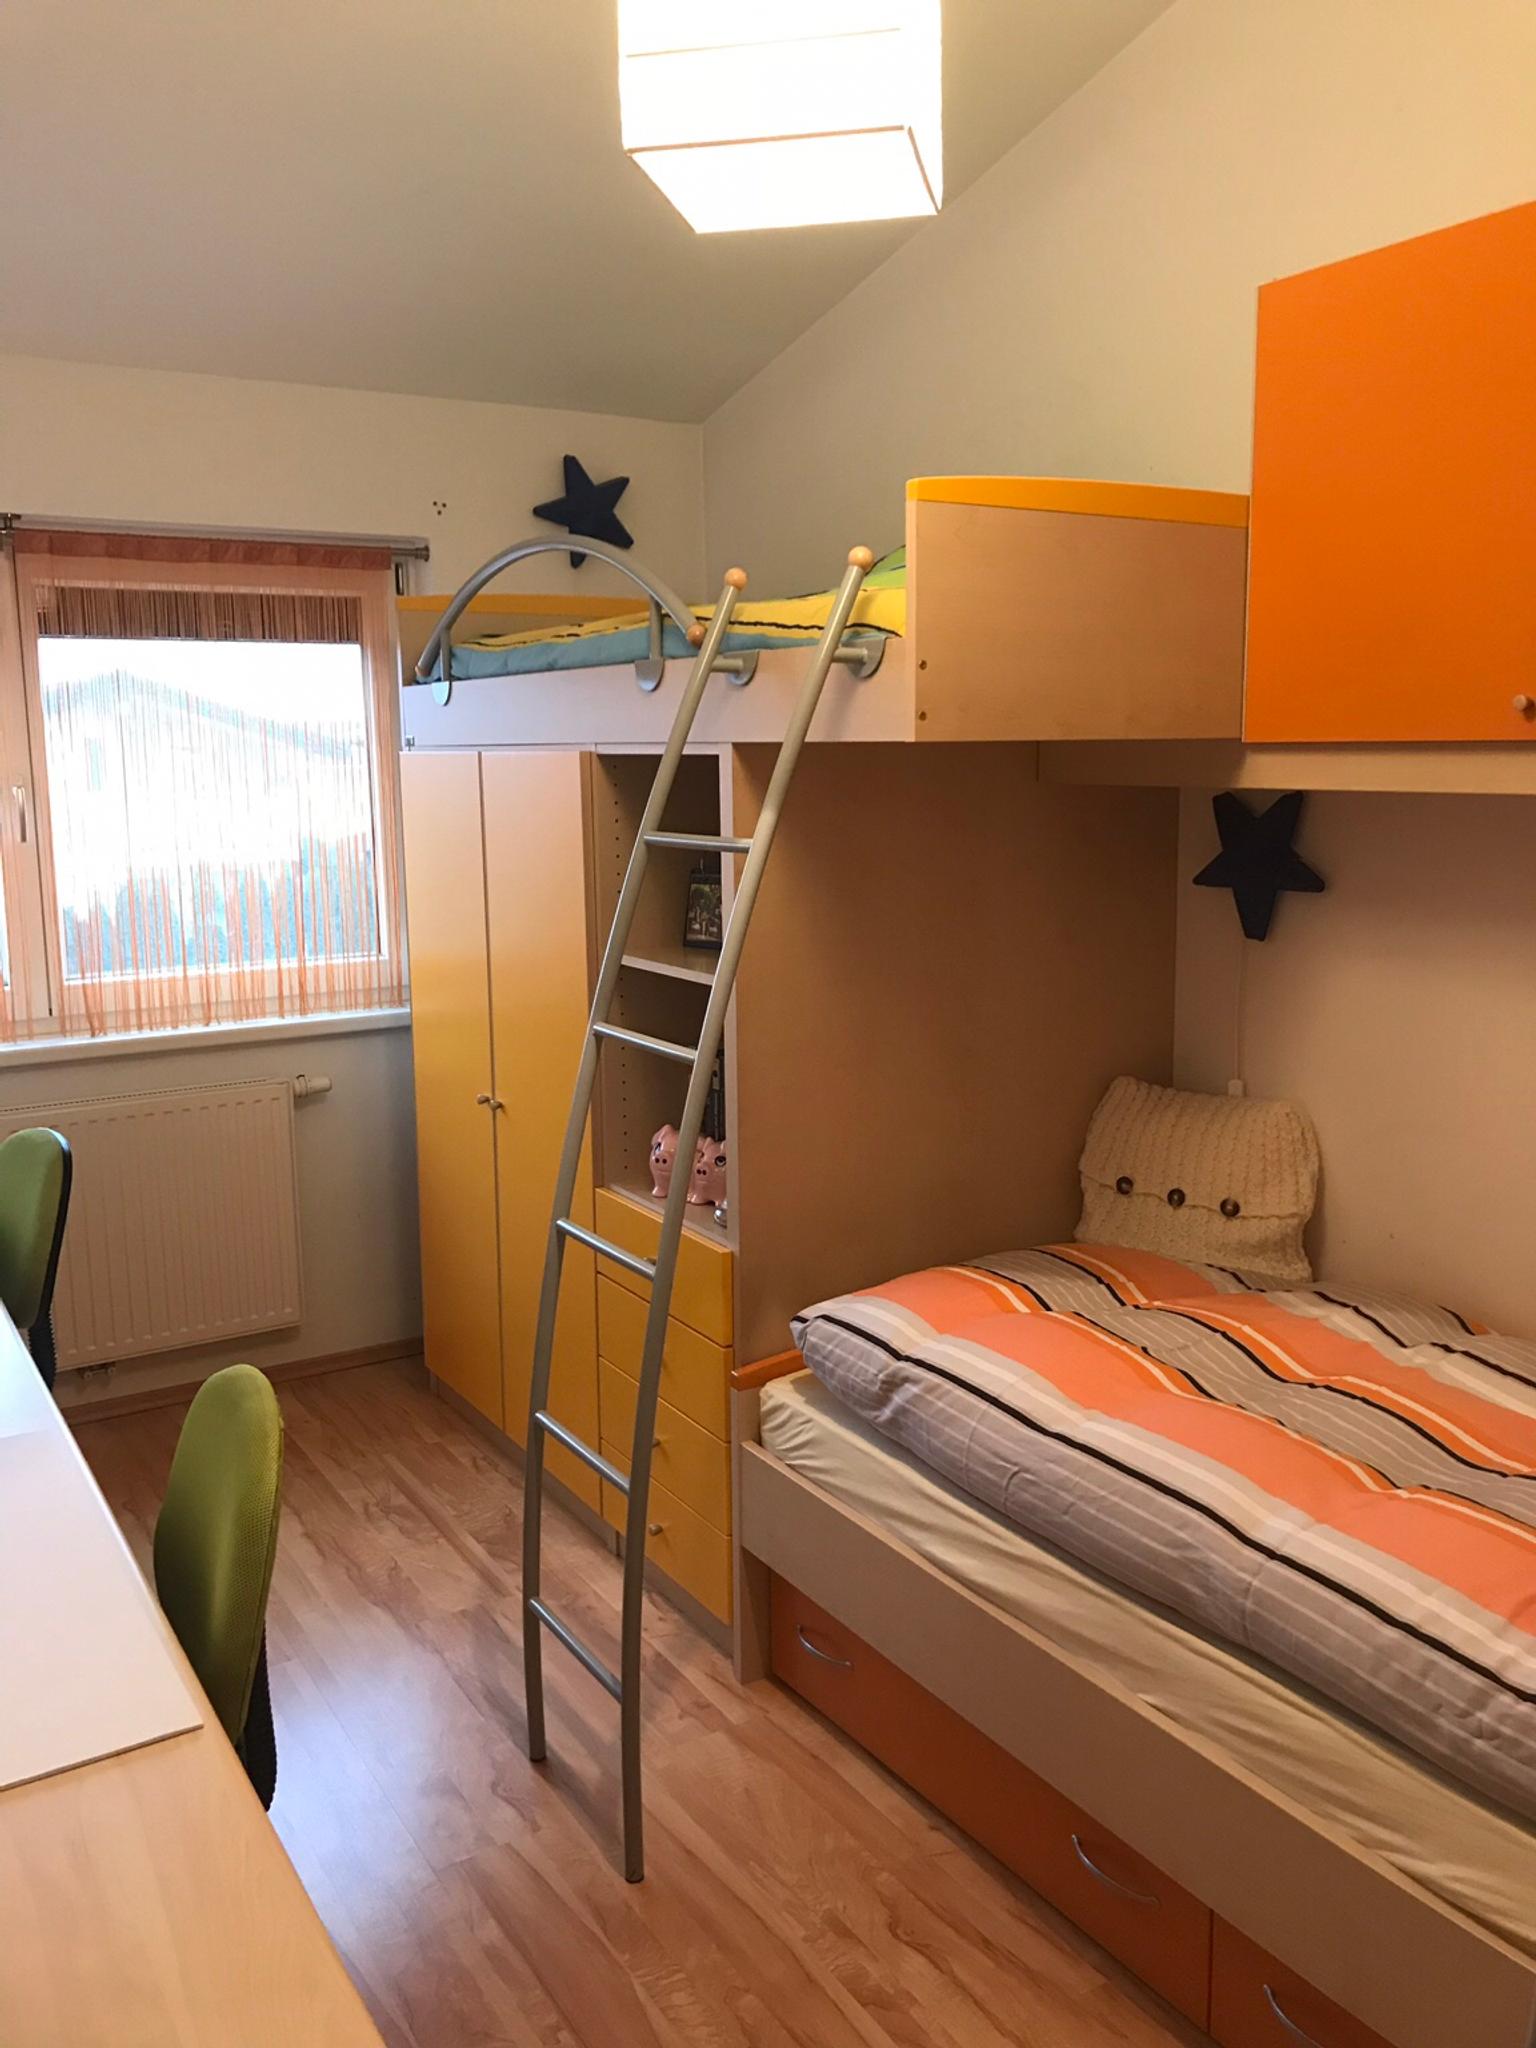 Kinderzimmer In 1220 Donaustadt For 1 500 00 For Sale Shpock